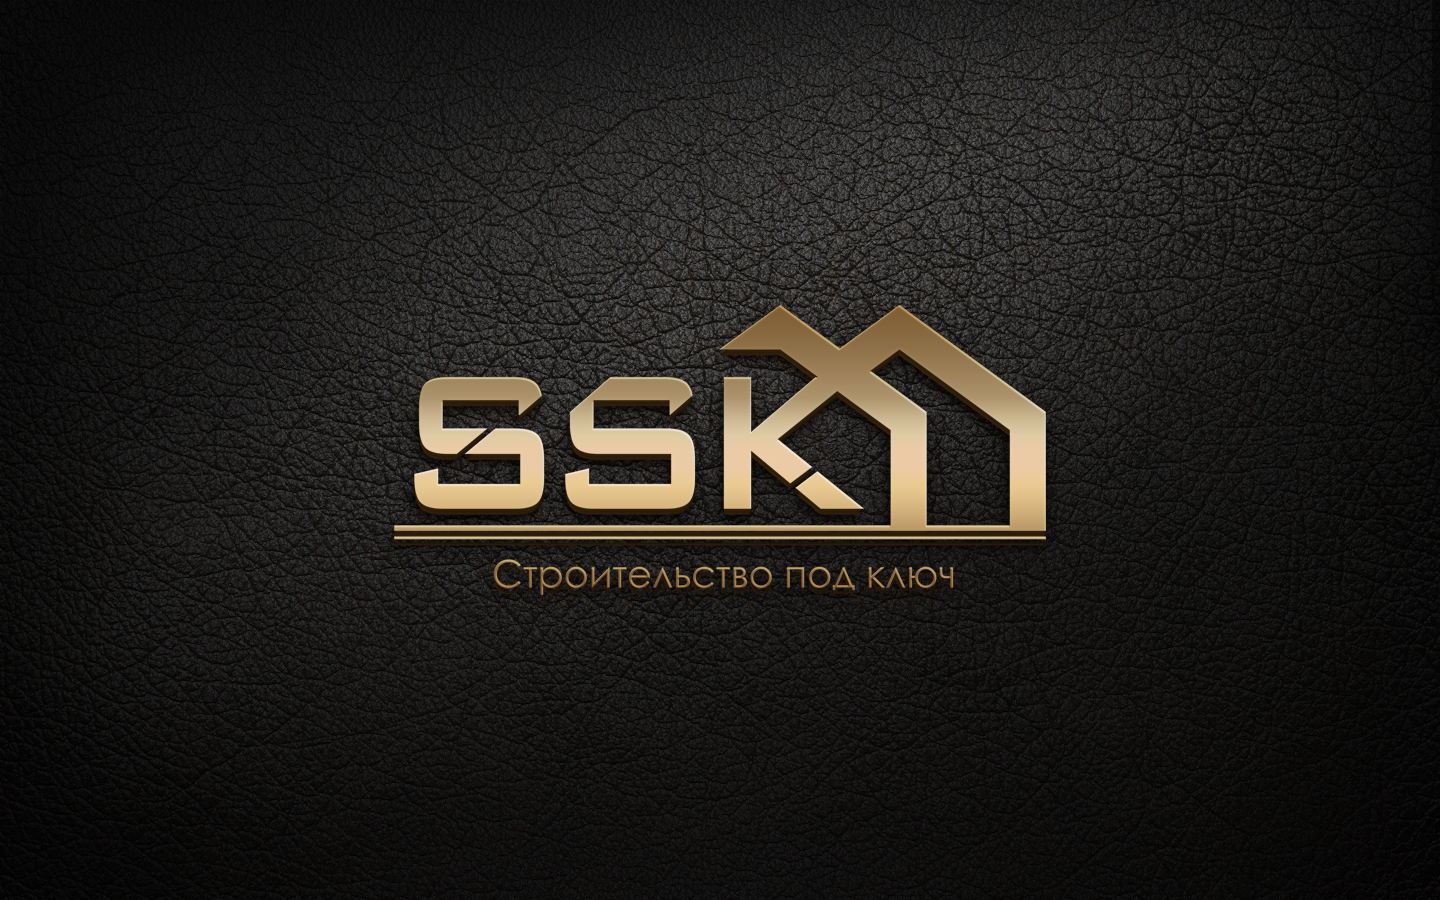 SSK - Строительство частных домов и коттеджей Логотип(logo)